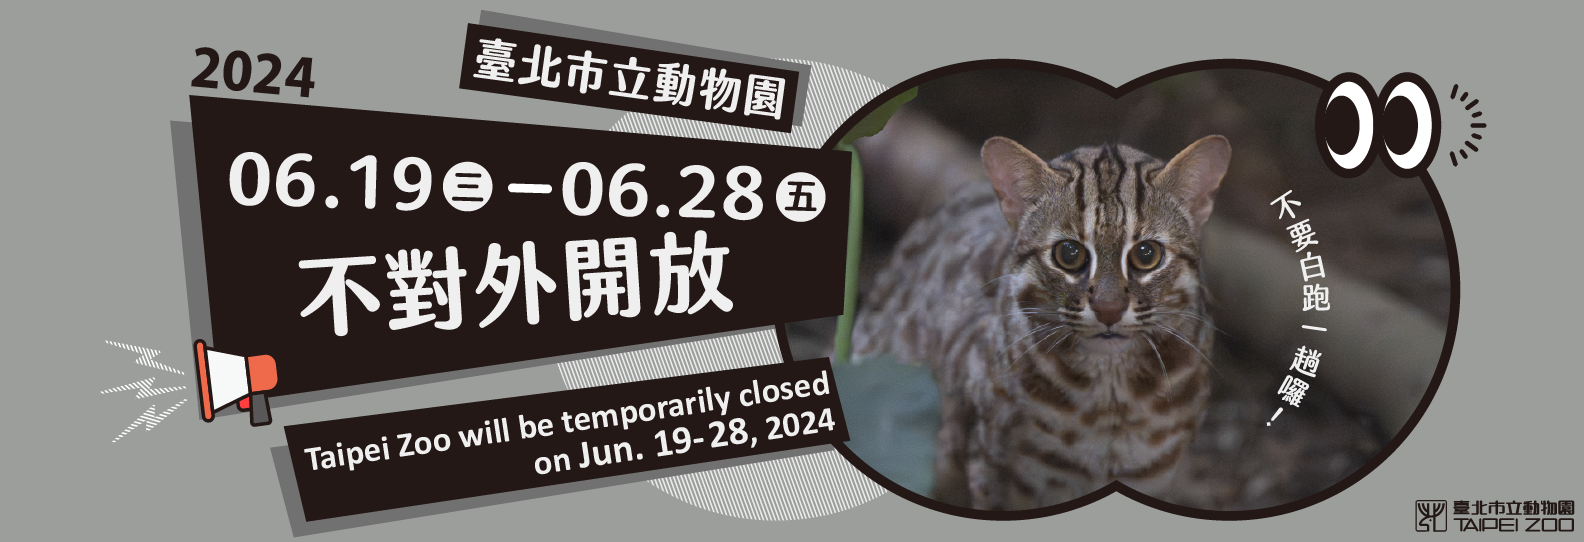 臺北市立動物園2024年6月19日至28日不對外開放